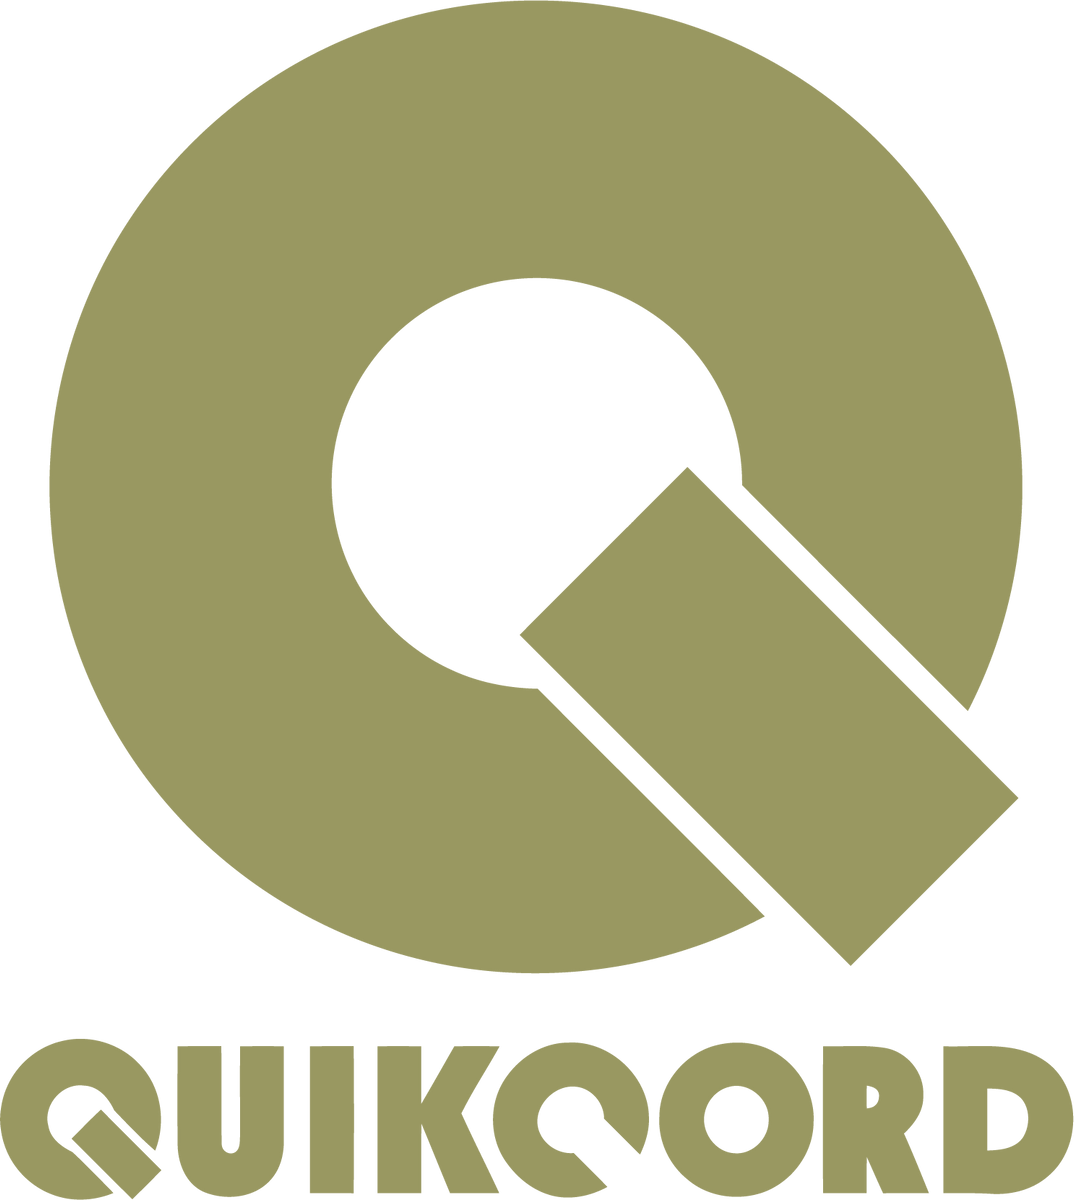 Quikcord